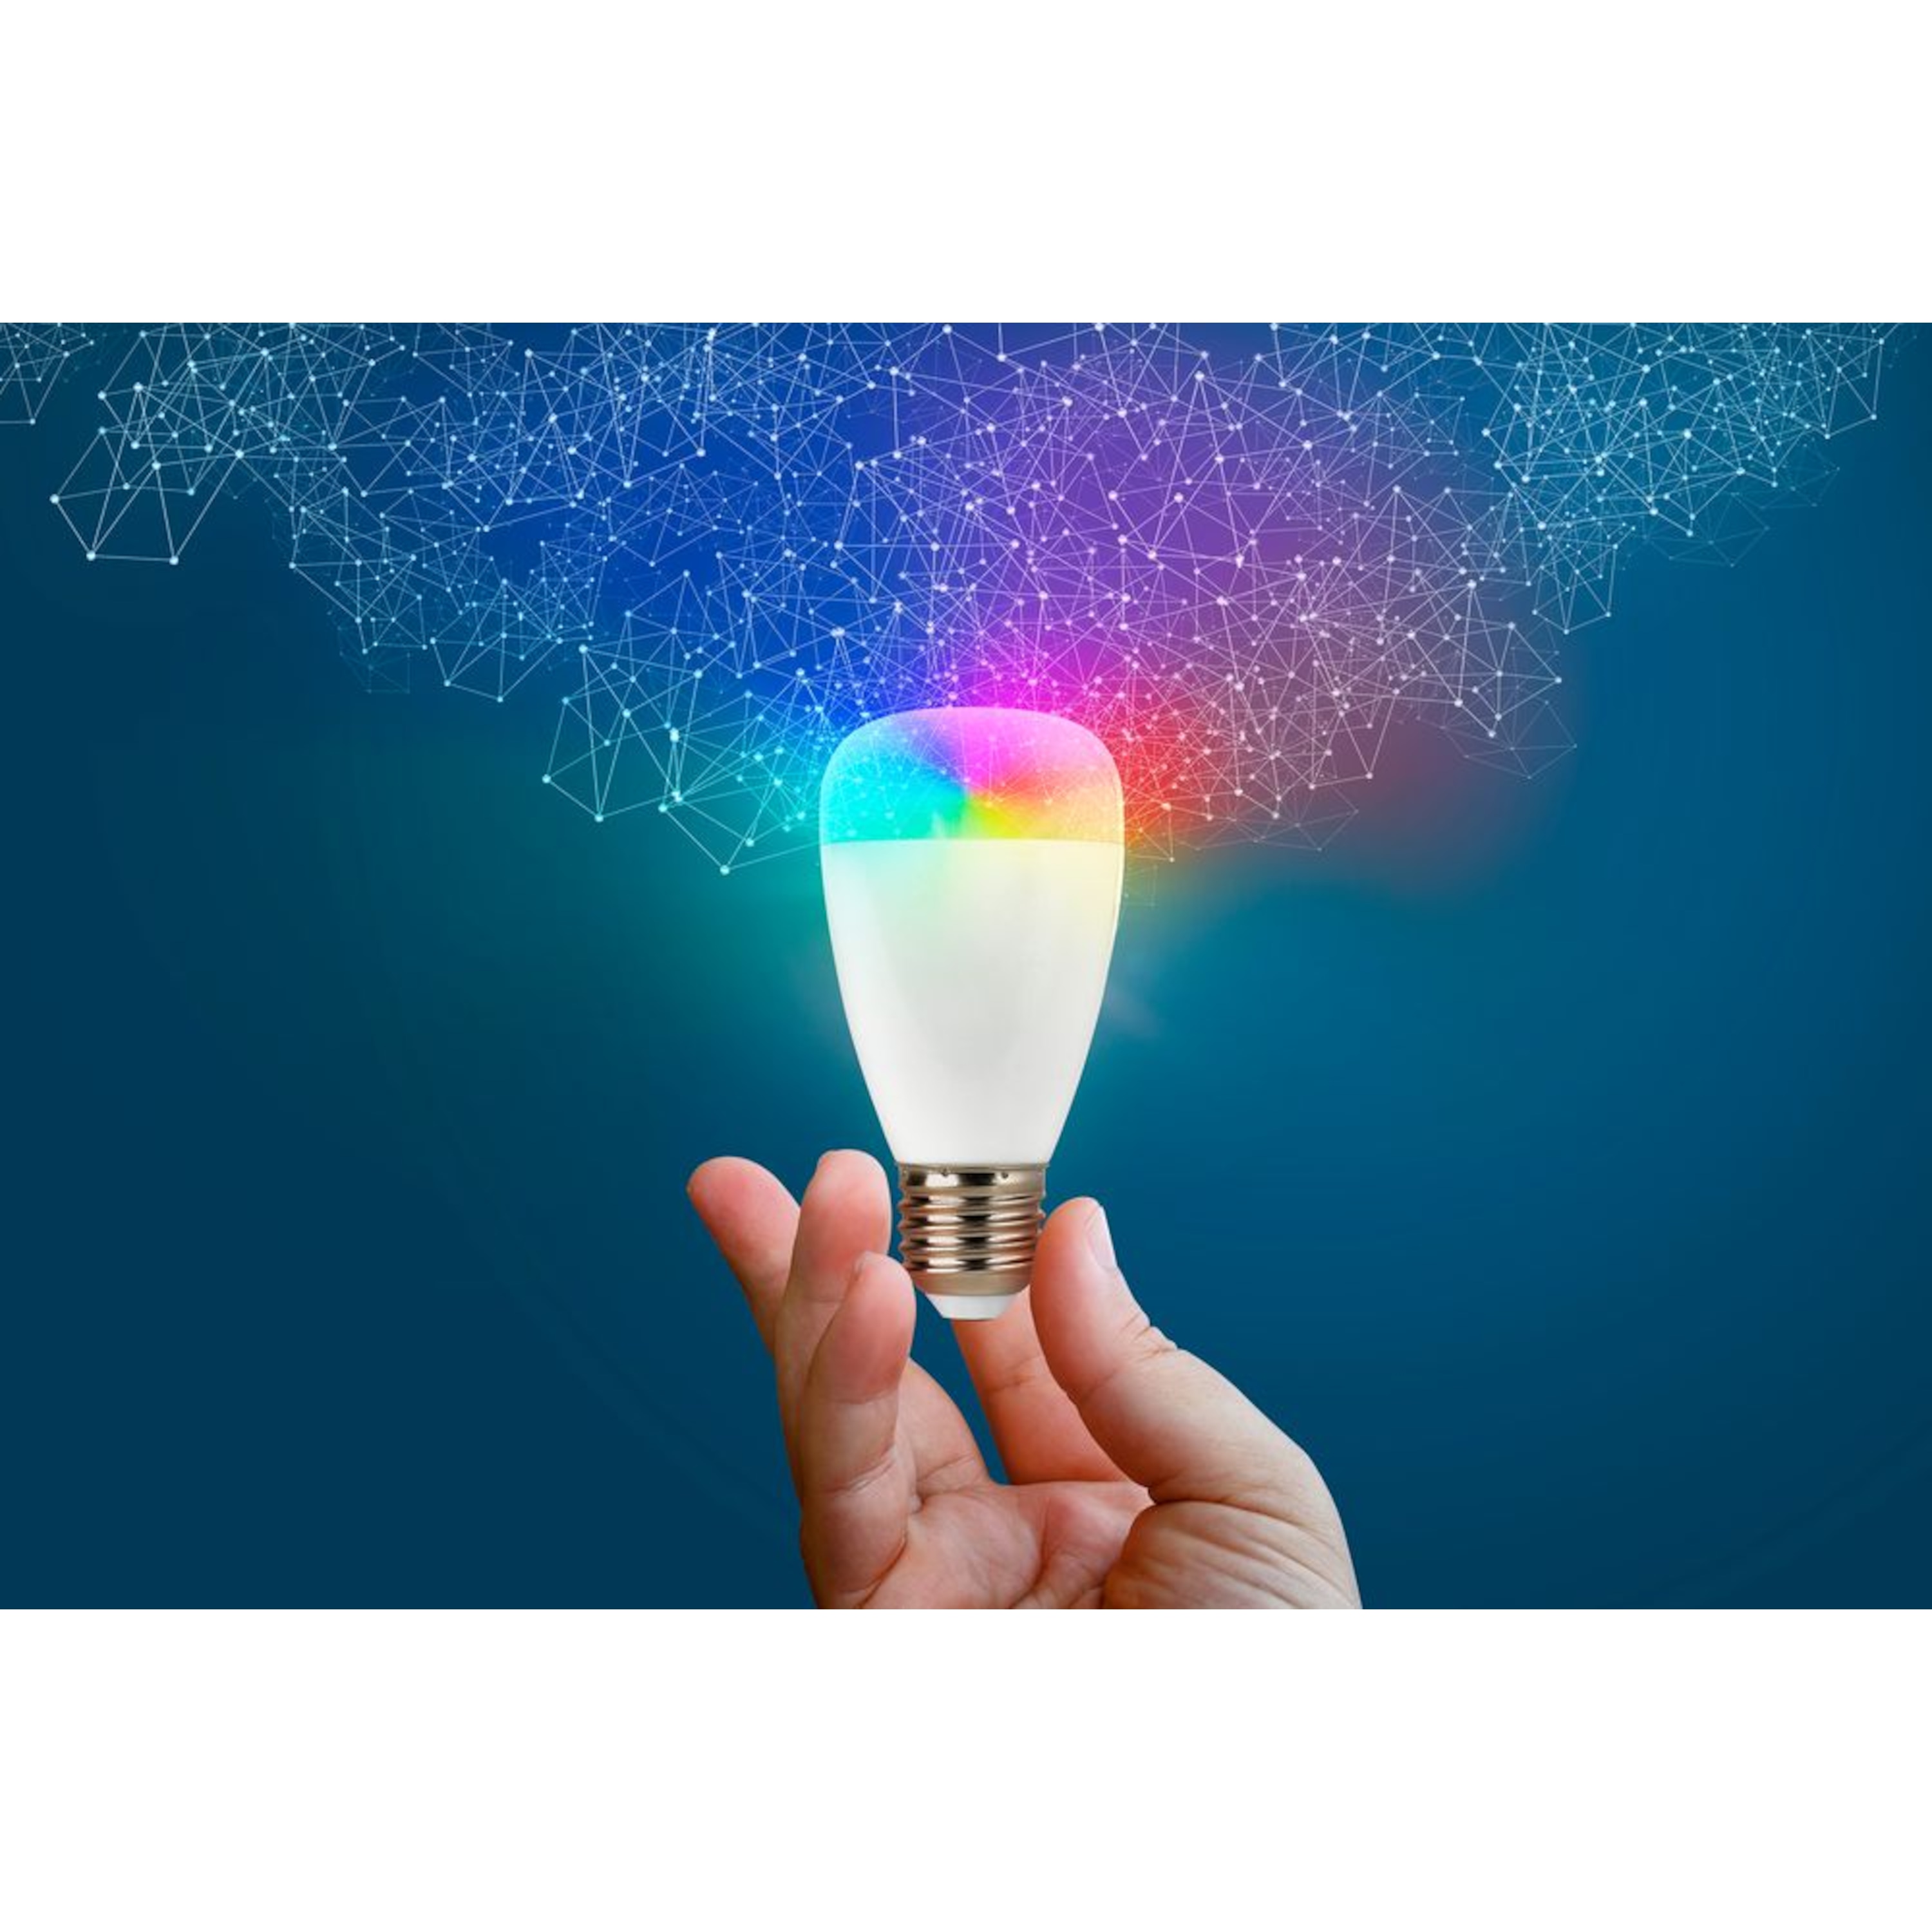 MEDION® LIFE+ RGB LED Leuchte S85360, Alle Farben dank RGB, Lichtdimmer, 50.000 Std. Nutzungsdauer, 470 Lumen, E27 Fassung